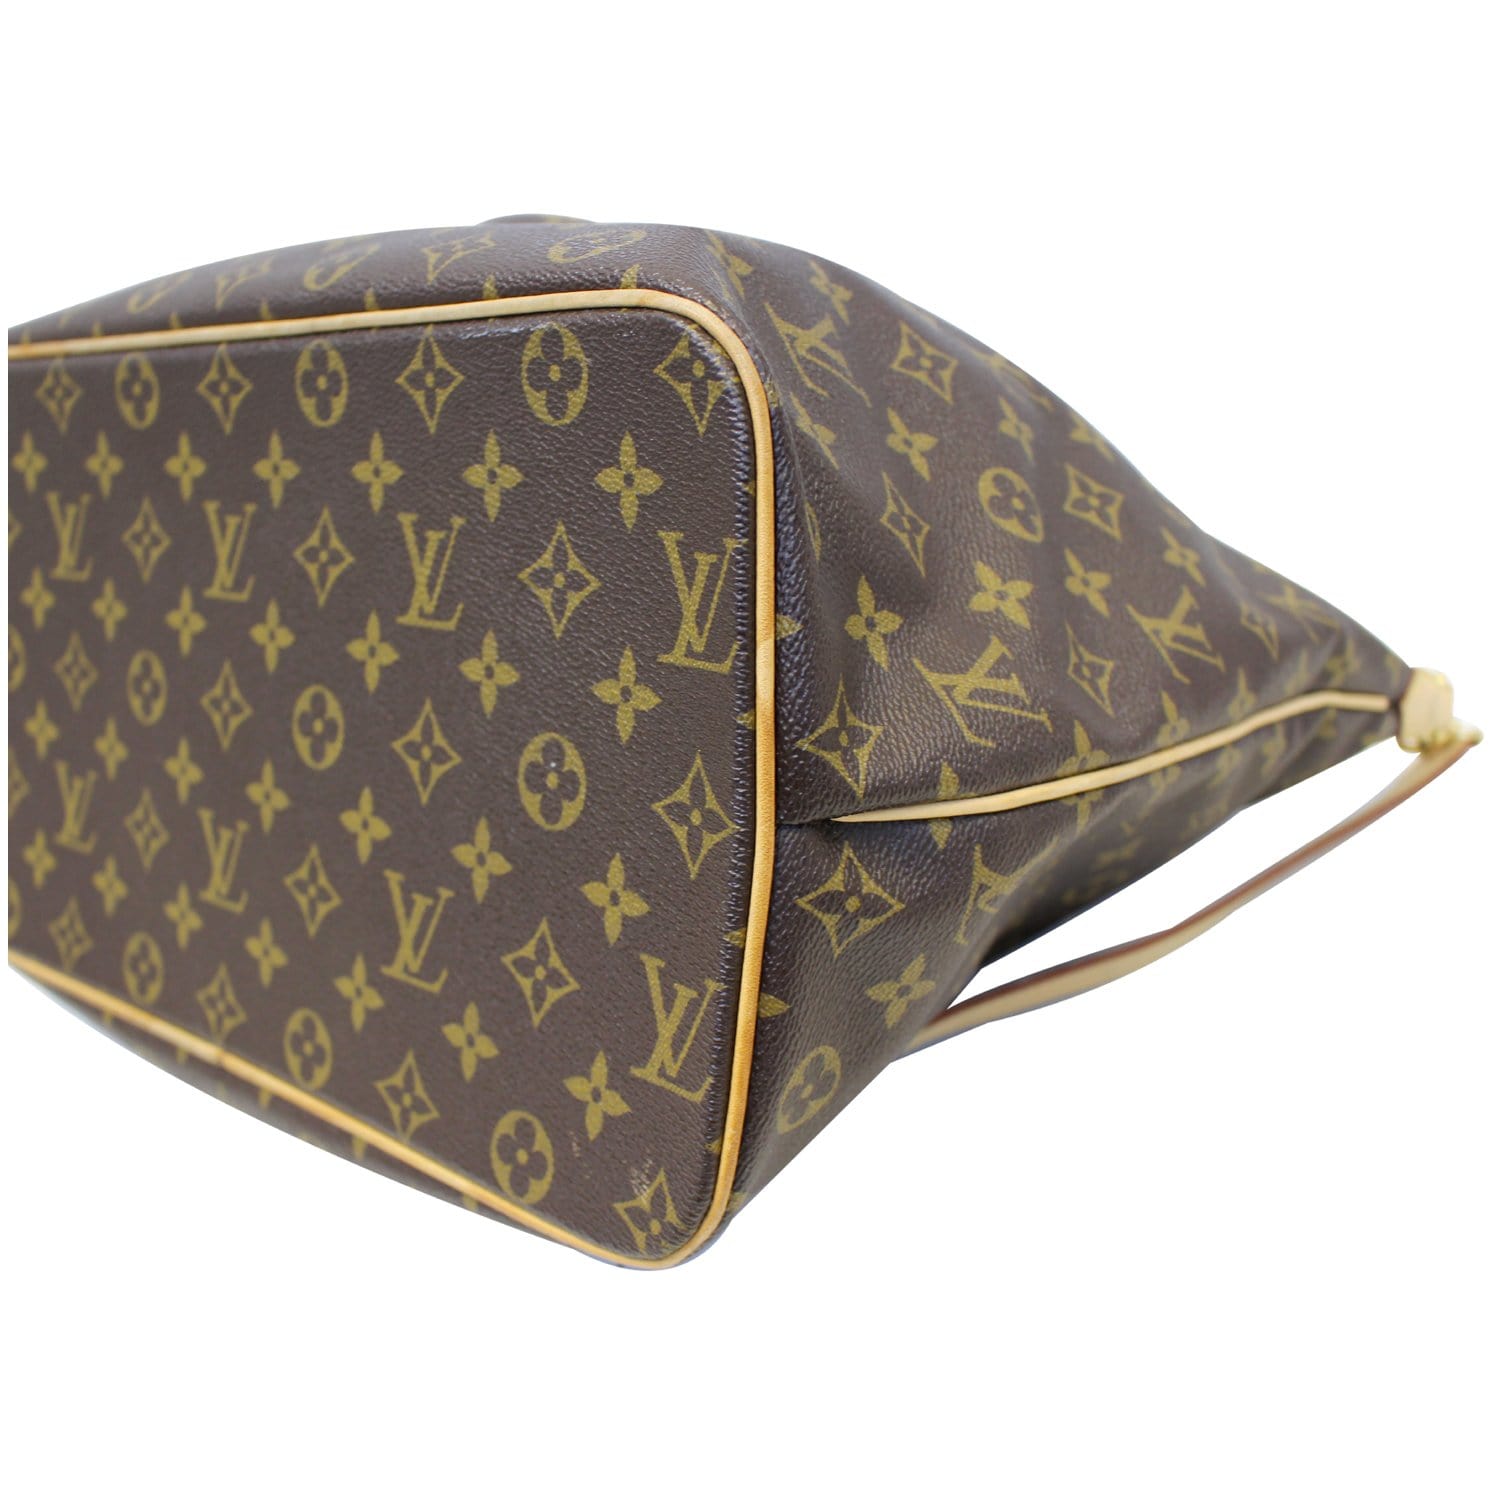 Authentic Louis Vuitton Palermo Gm Monogram Tote bag Shoulder Bag